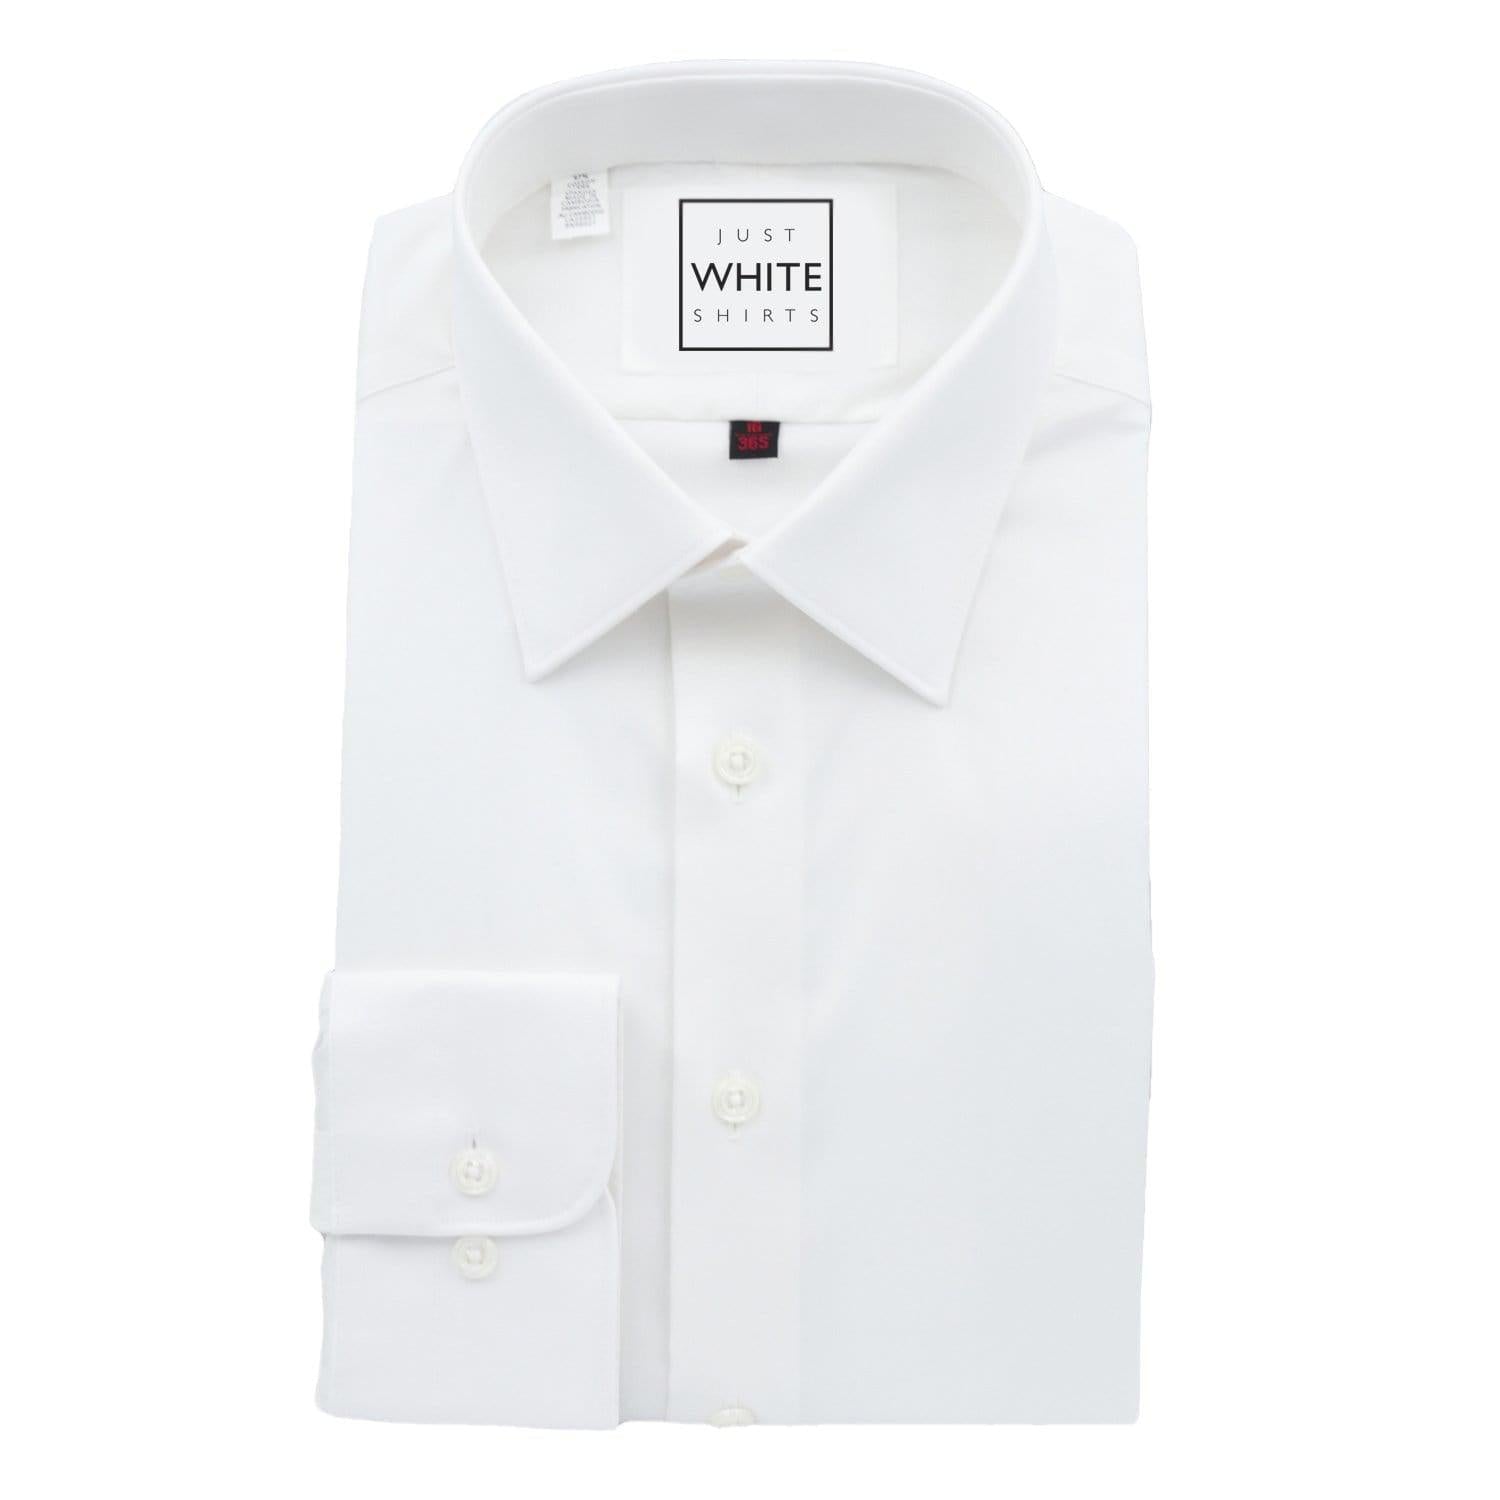 Men's white shirts